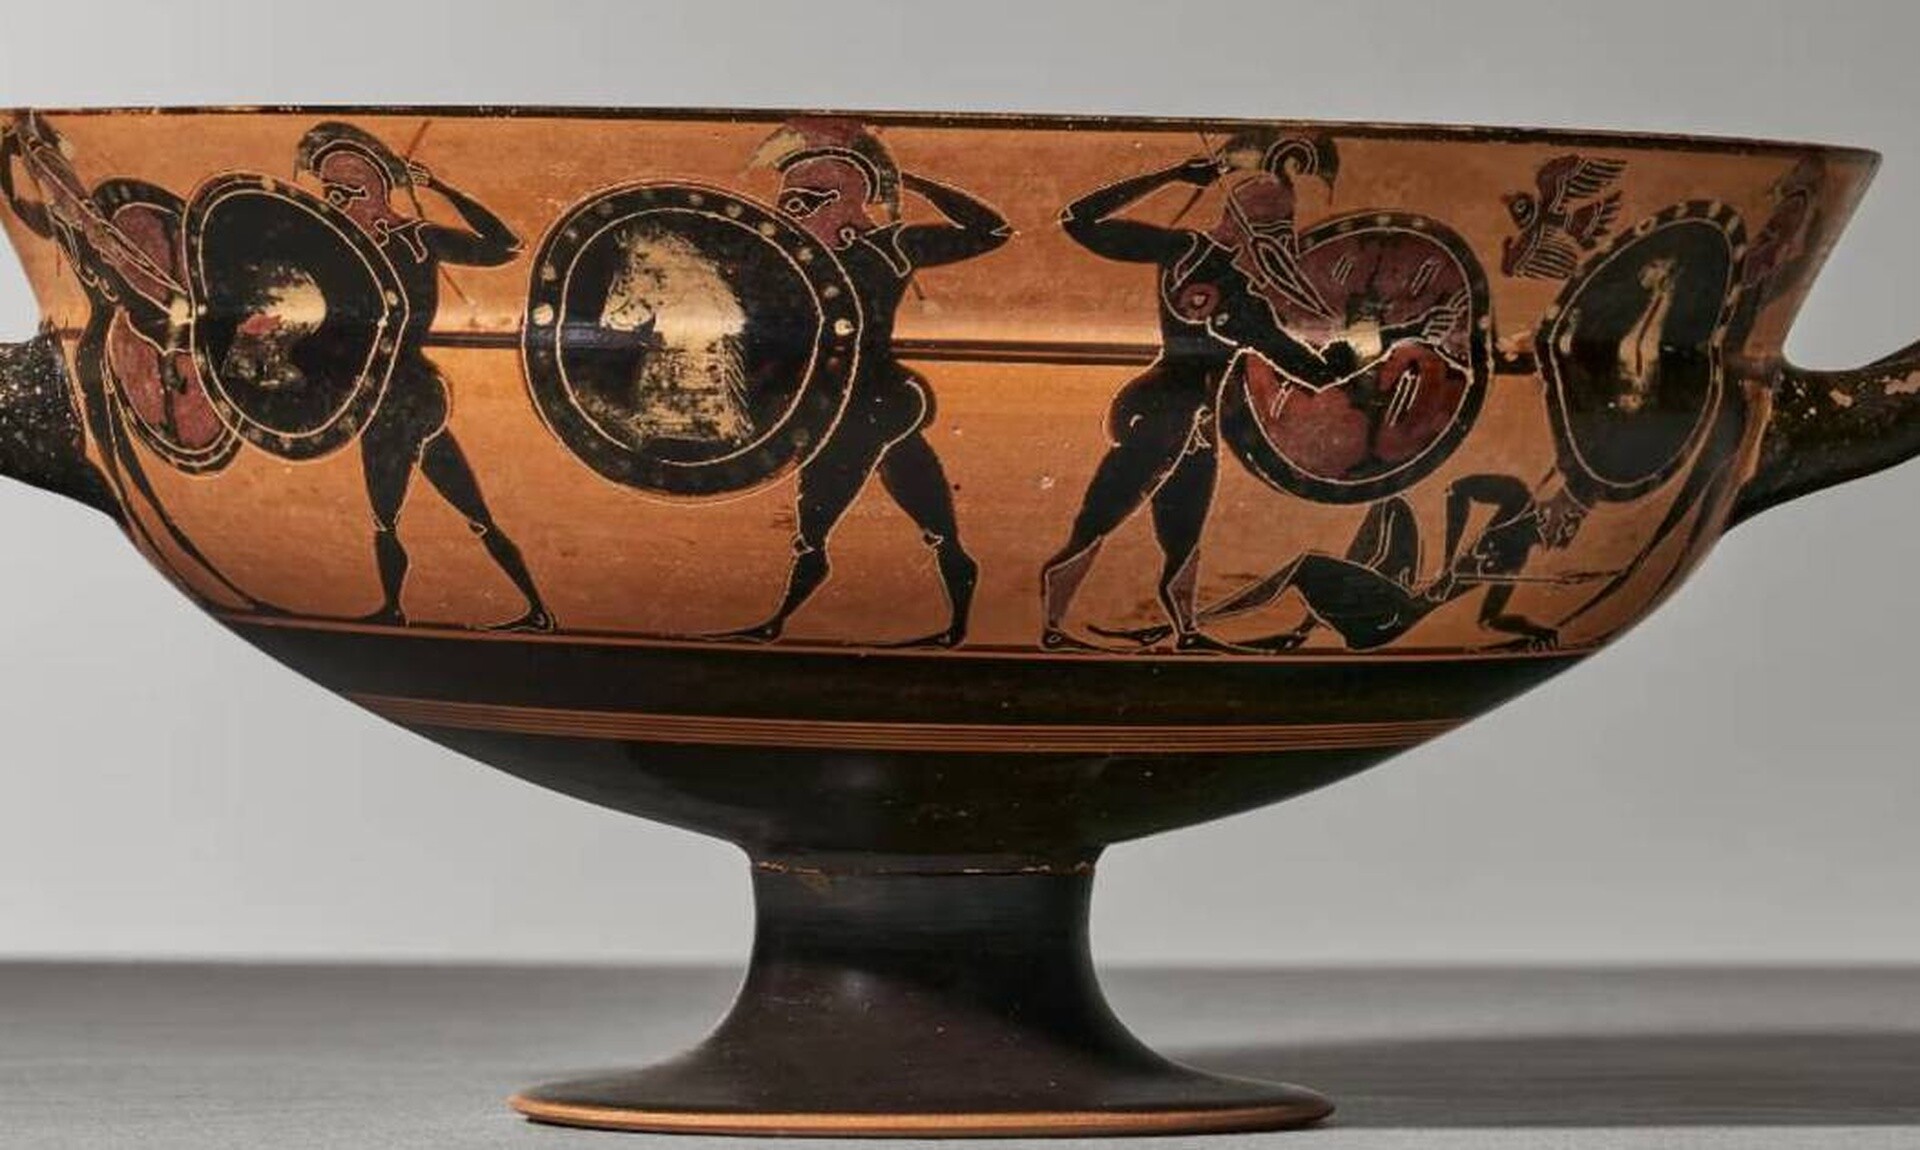 Σκάνδαλο με δημοπρασία αρχαίων ελληνικών αγγείων: Αποκαλύψεις για παράνομη εμπορία αρχαιοτήτων